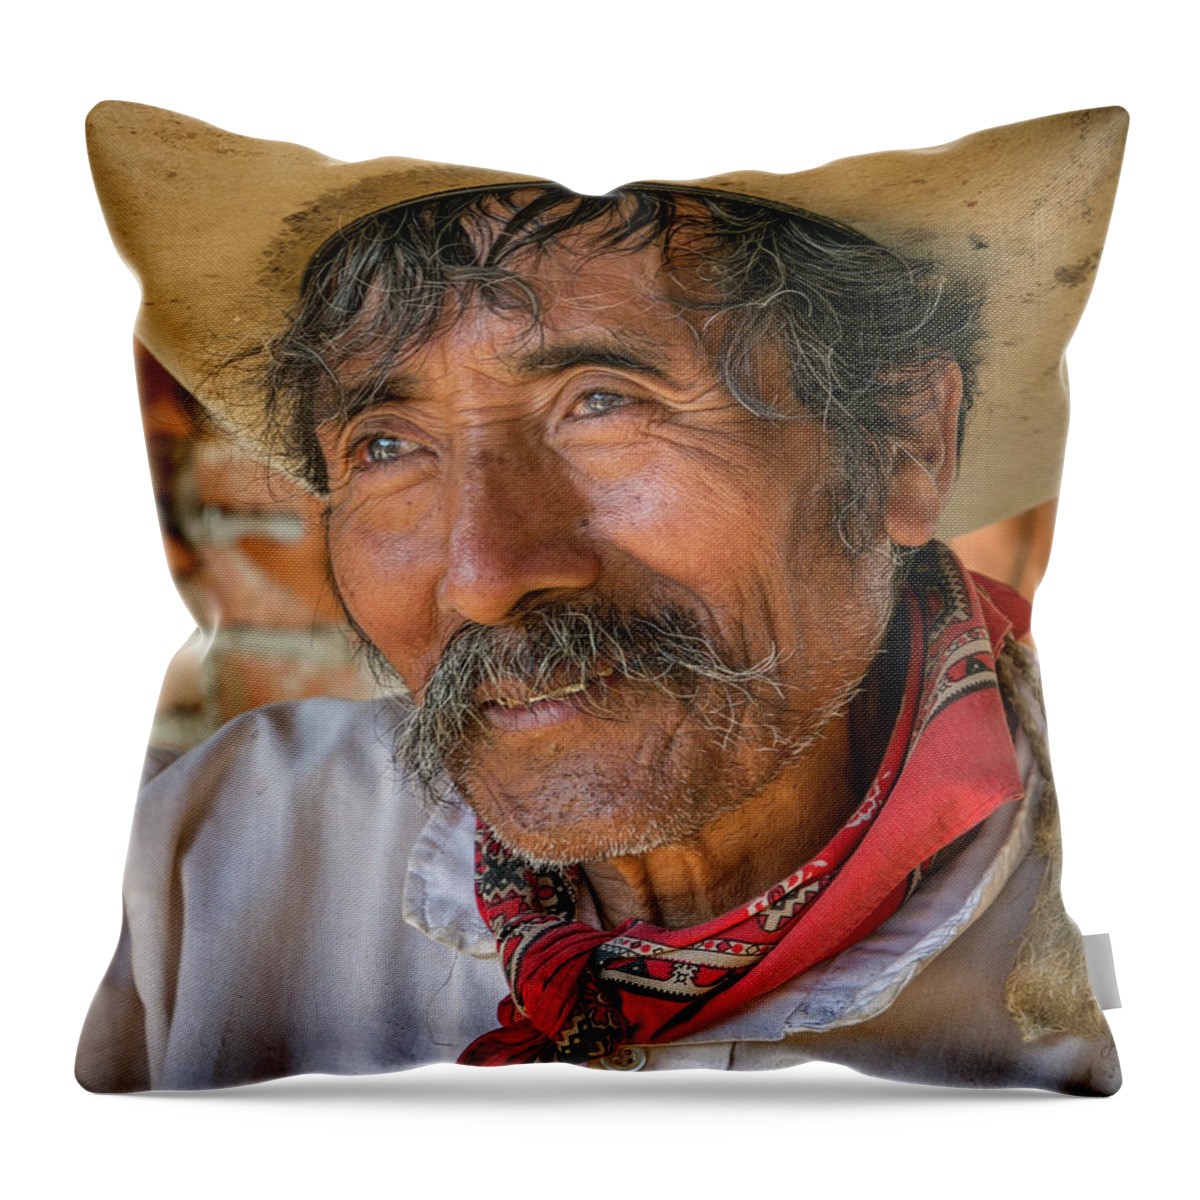 Potter Throw Pillow featuring the photograph Blind Potter Jose Garcia by Jurgen Lorenzen